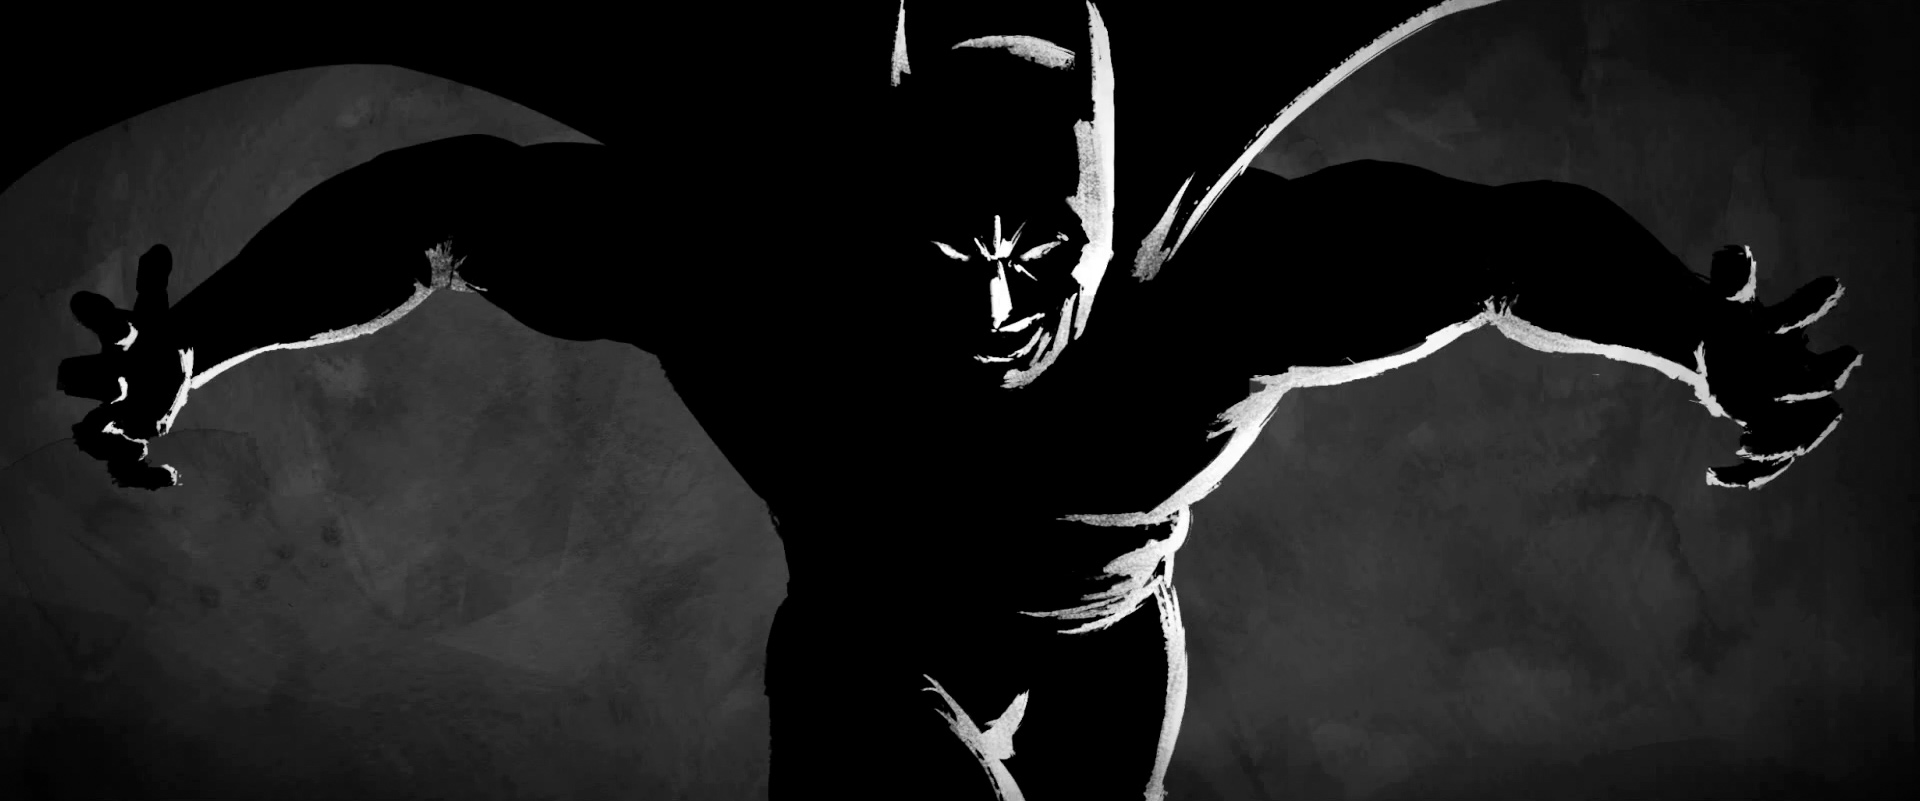 stunning-batman-animatic-short-a-gotham-fairytale-41.jpg